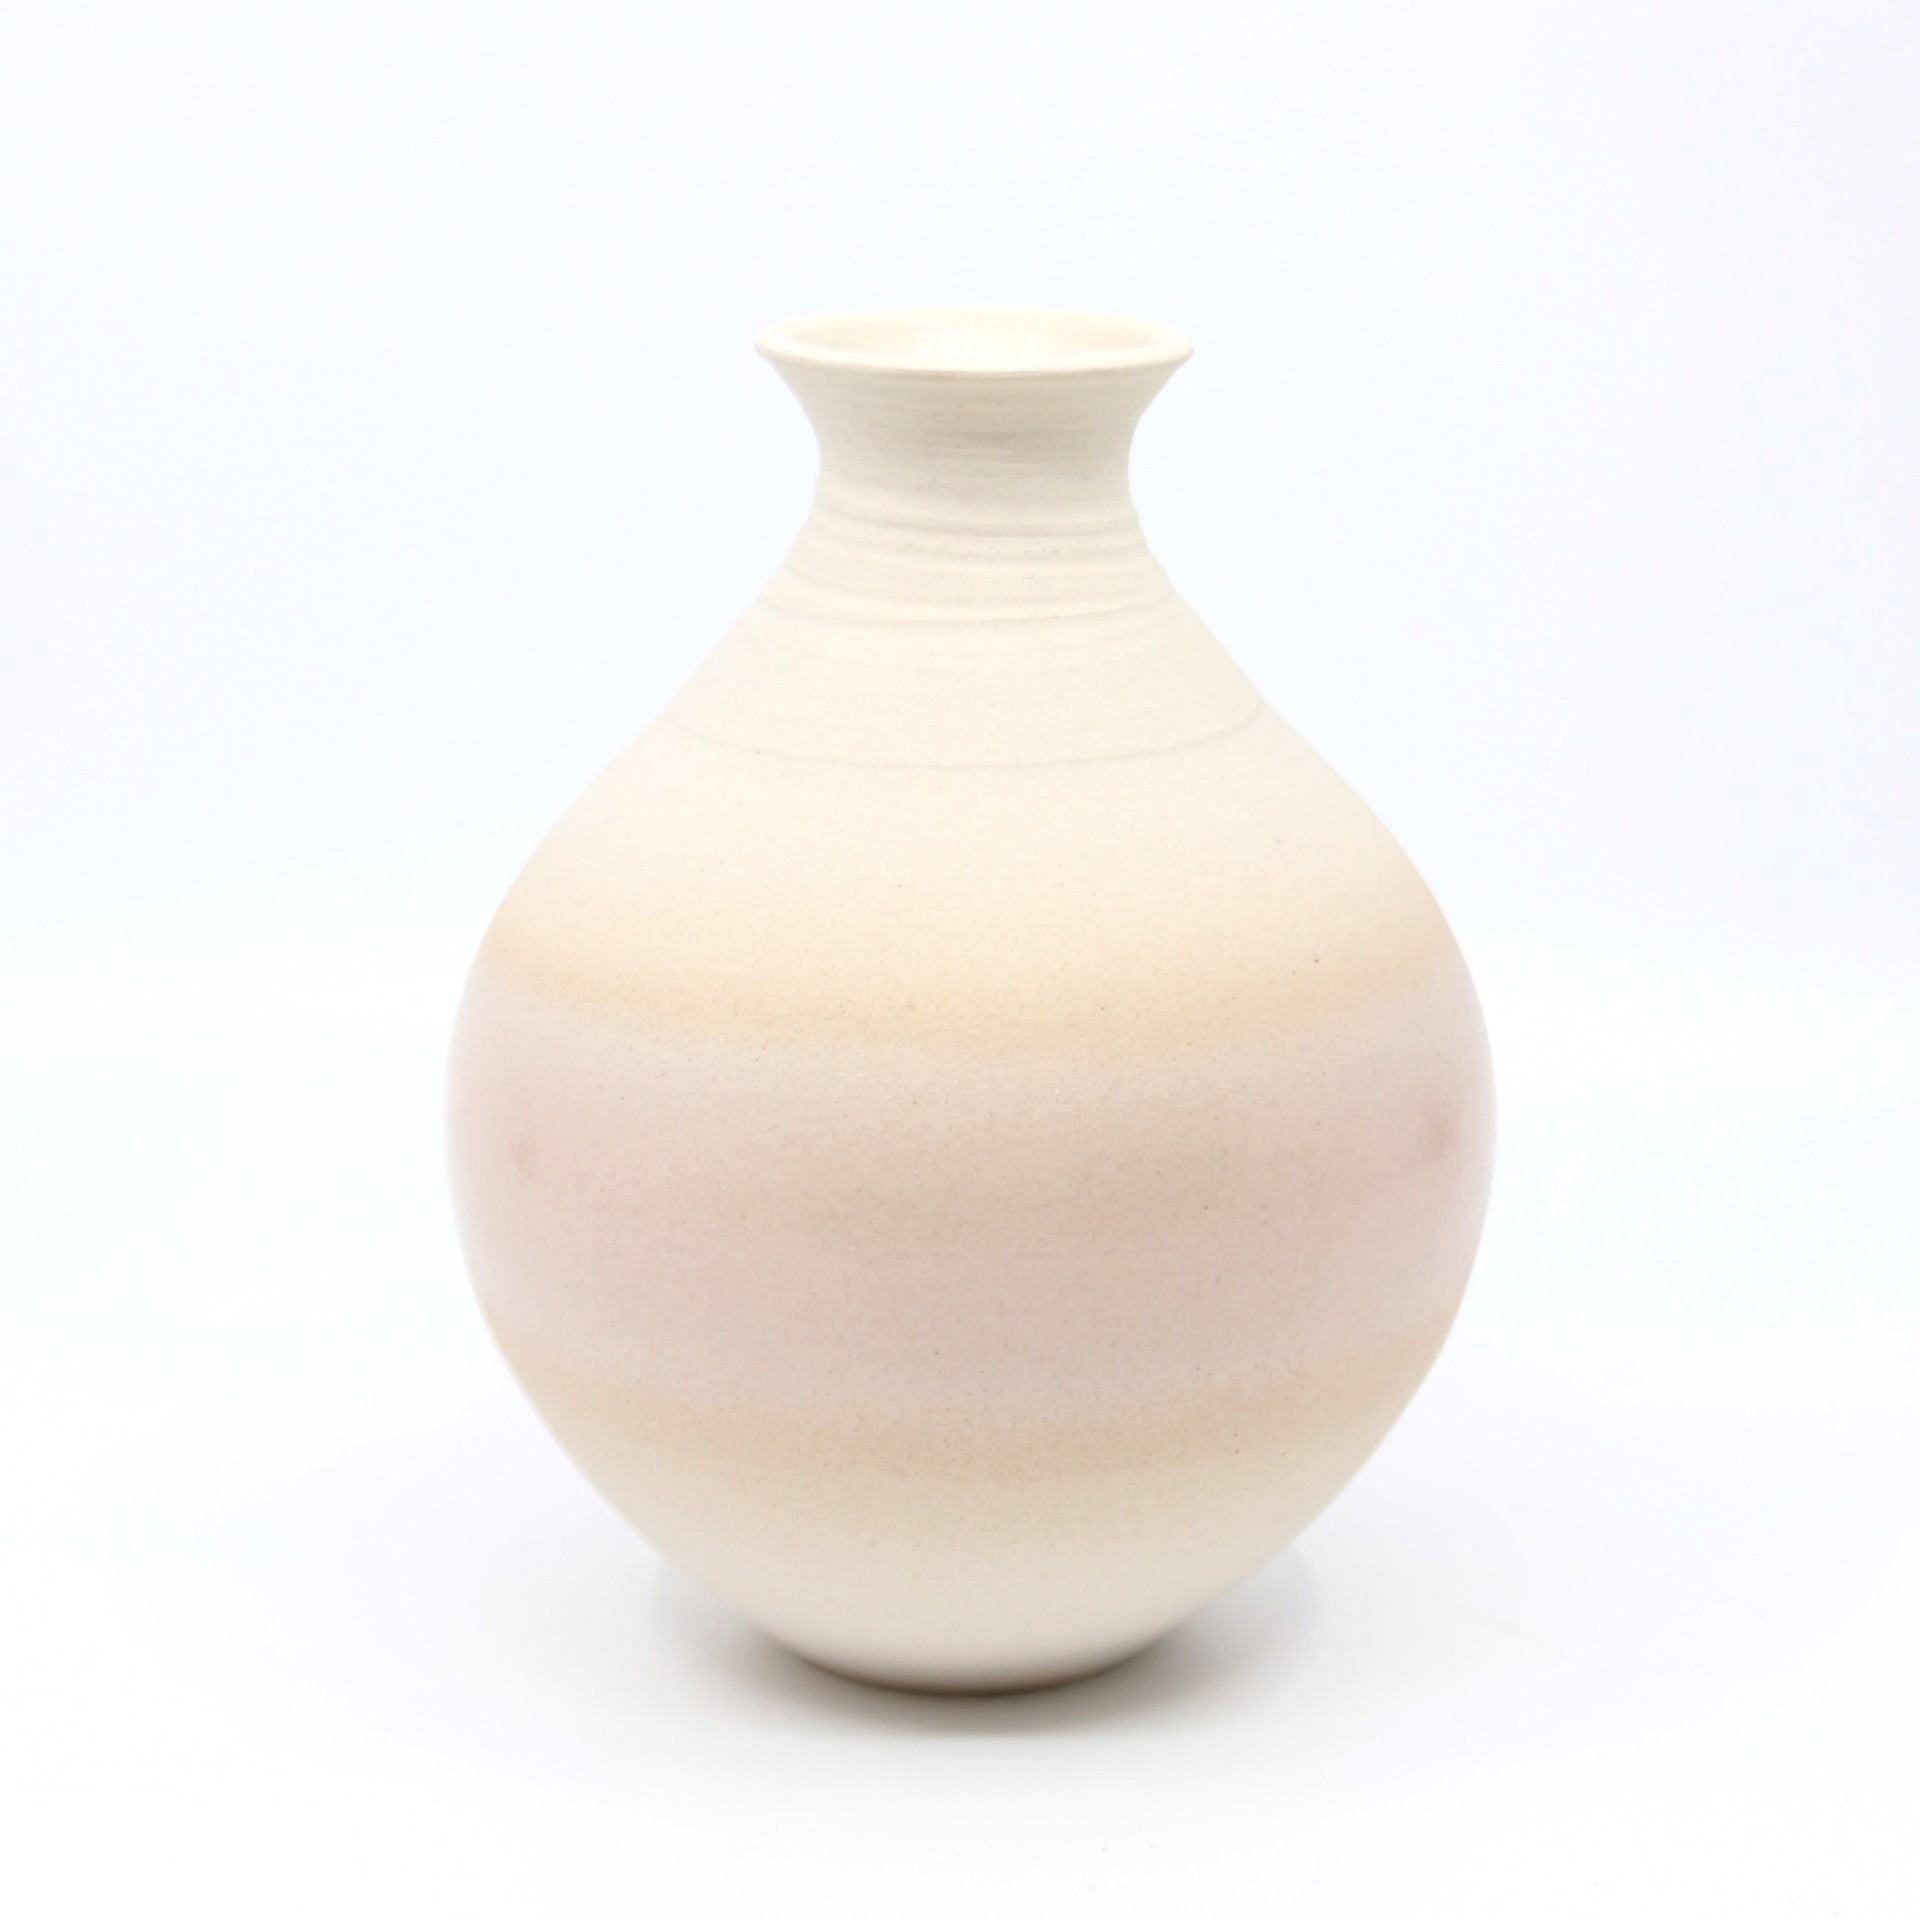 Vase 7 by Heather Bradley